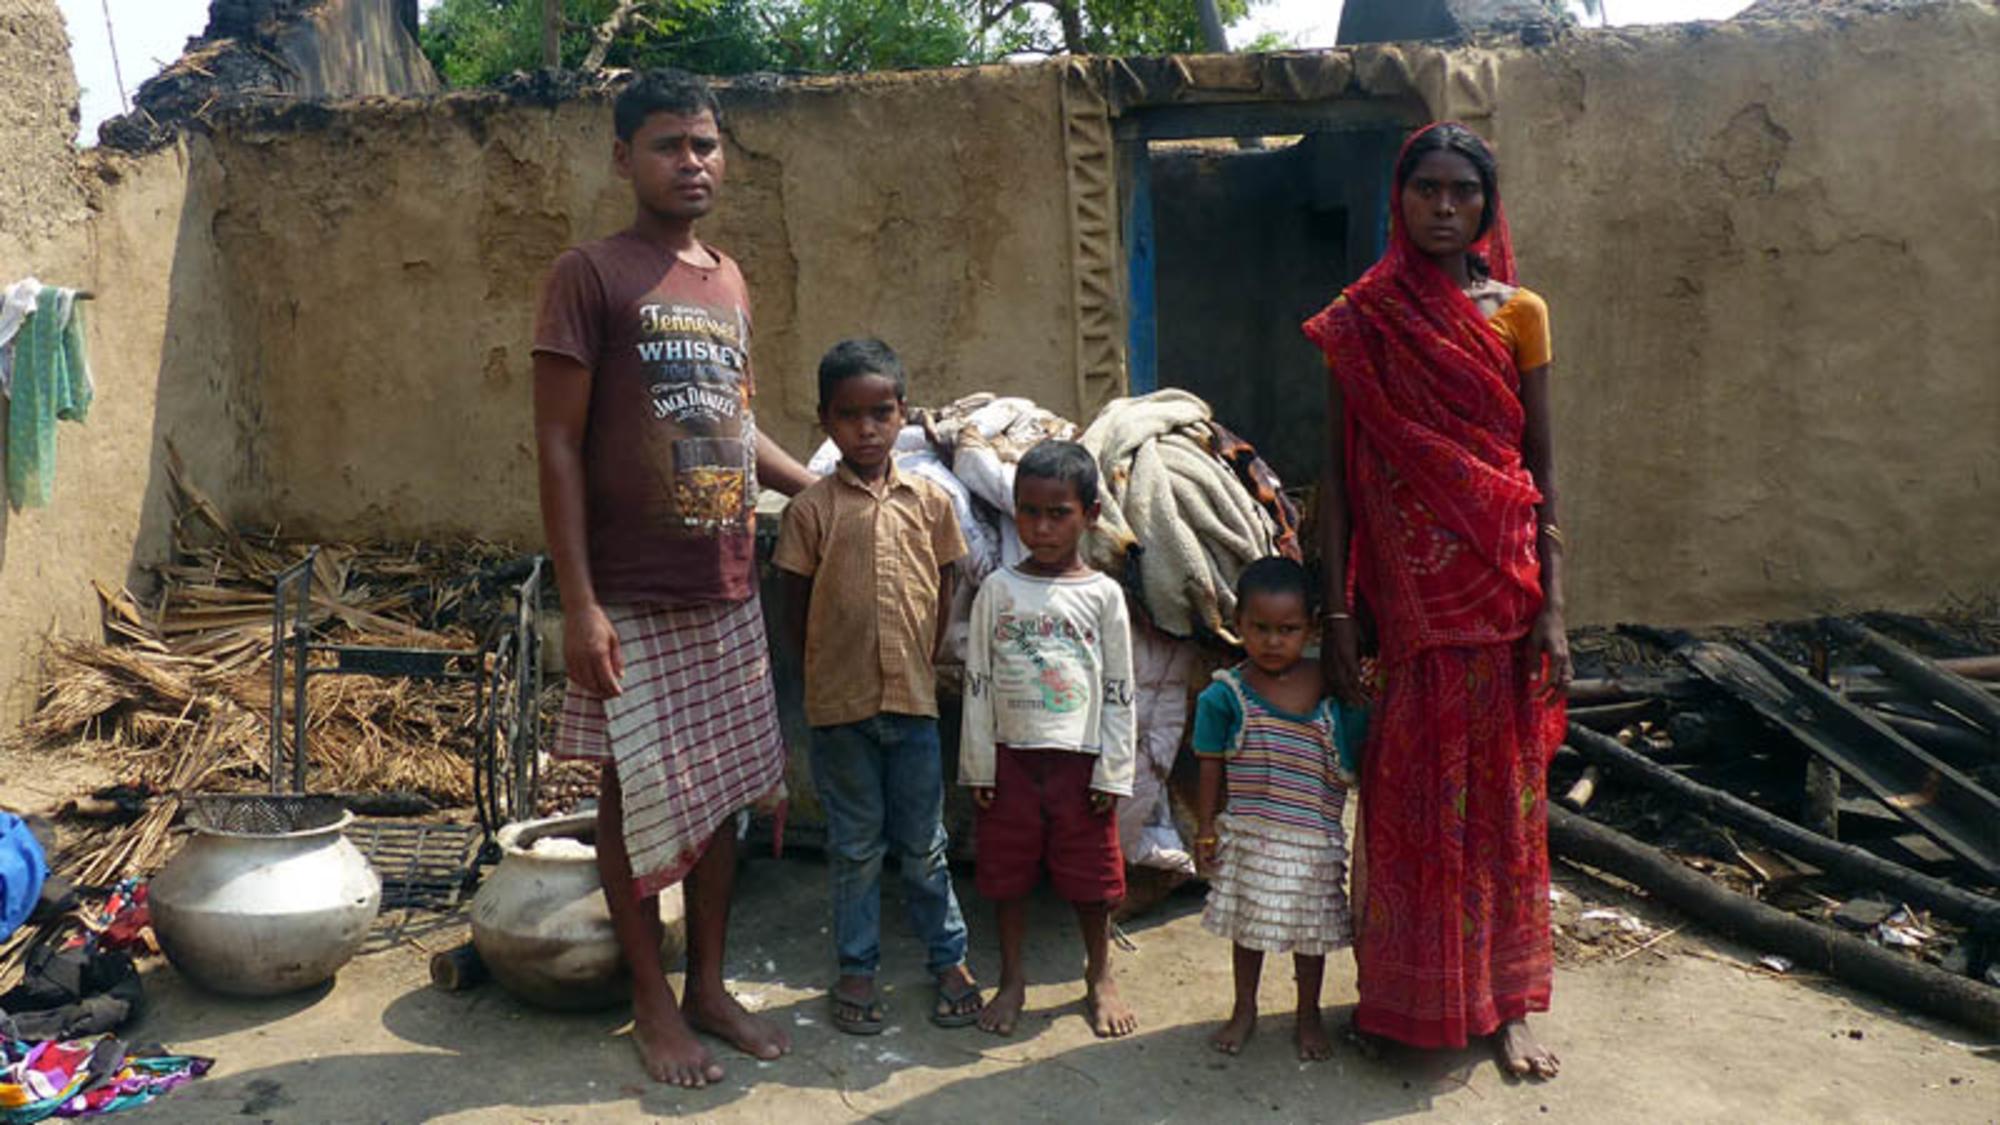  Ser un ‘intocable’ en la India, aún peor durante una pandemia  - 3